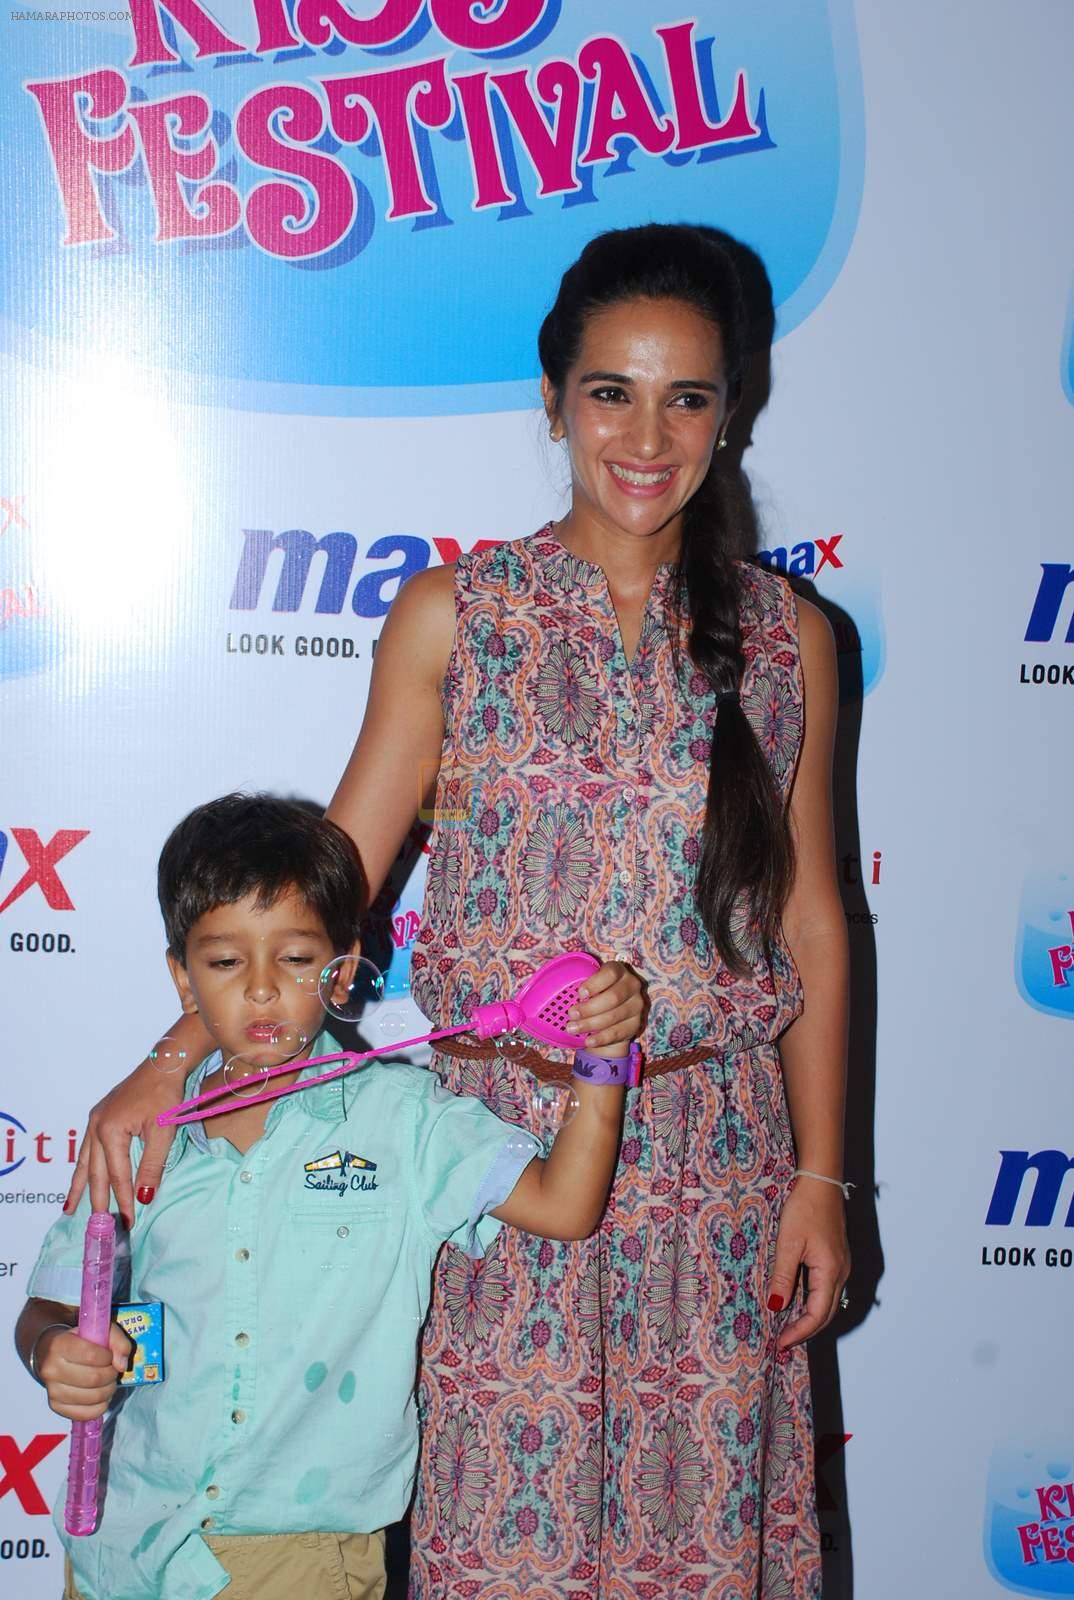 Tara Sharma at Max kids fashion show in Mumbai on 5th May 2015